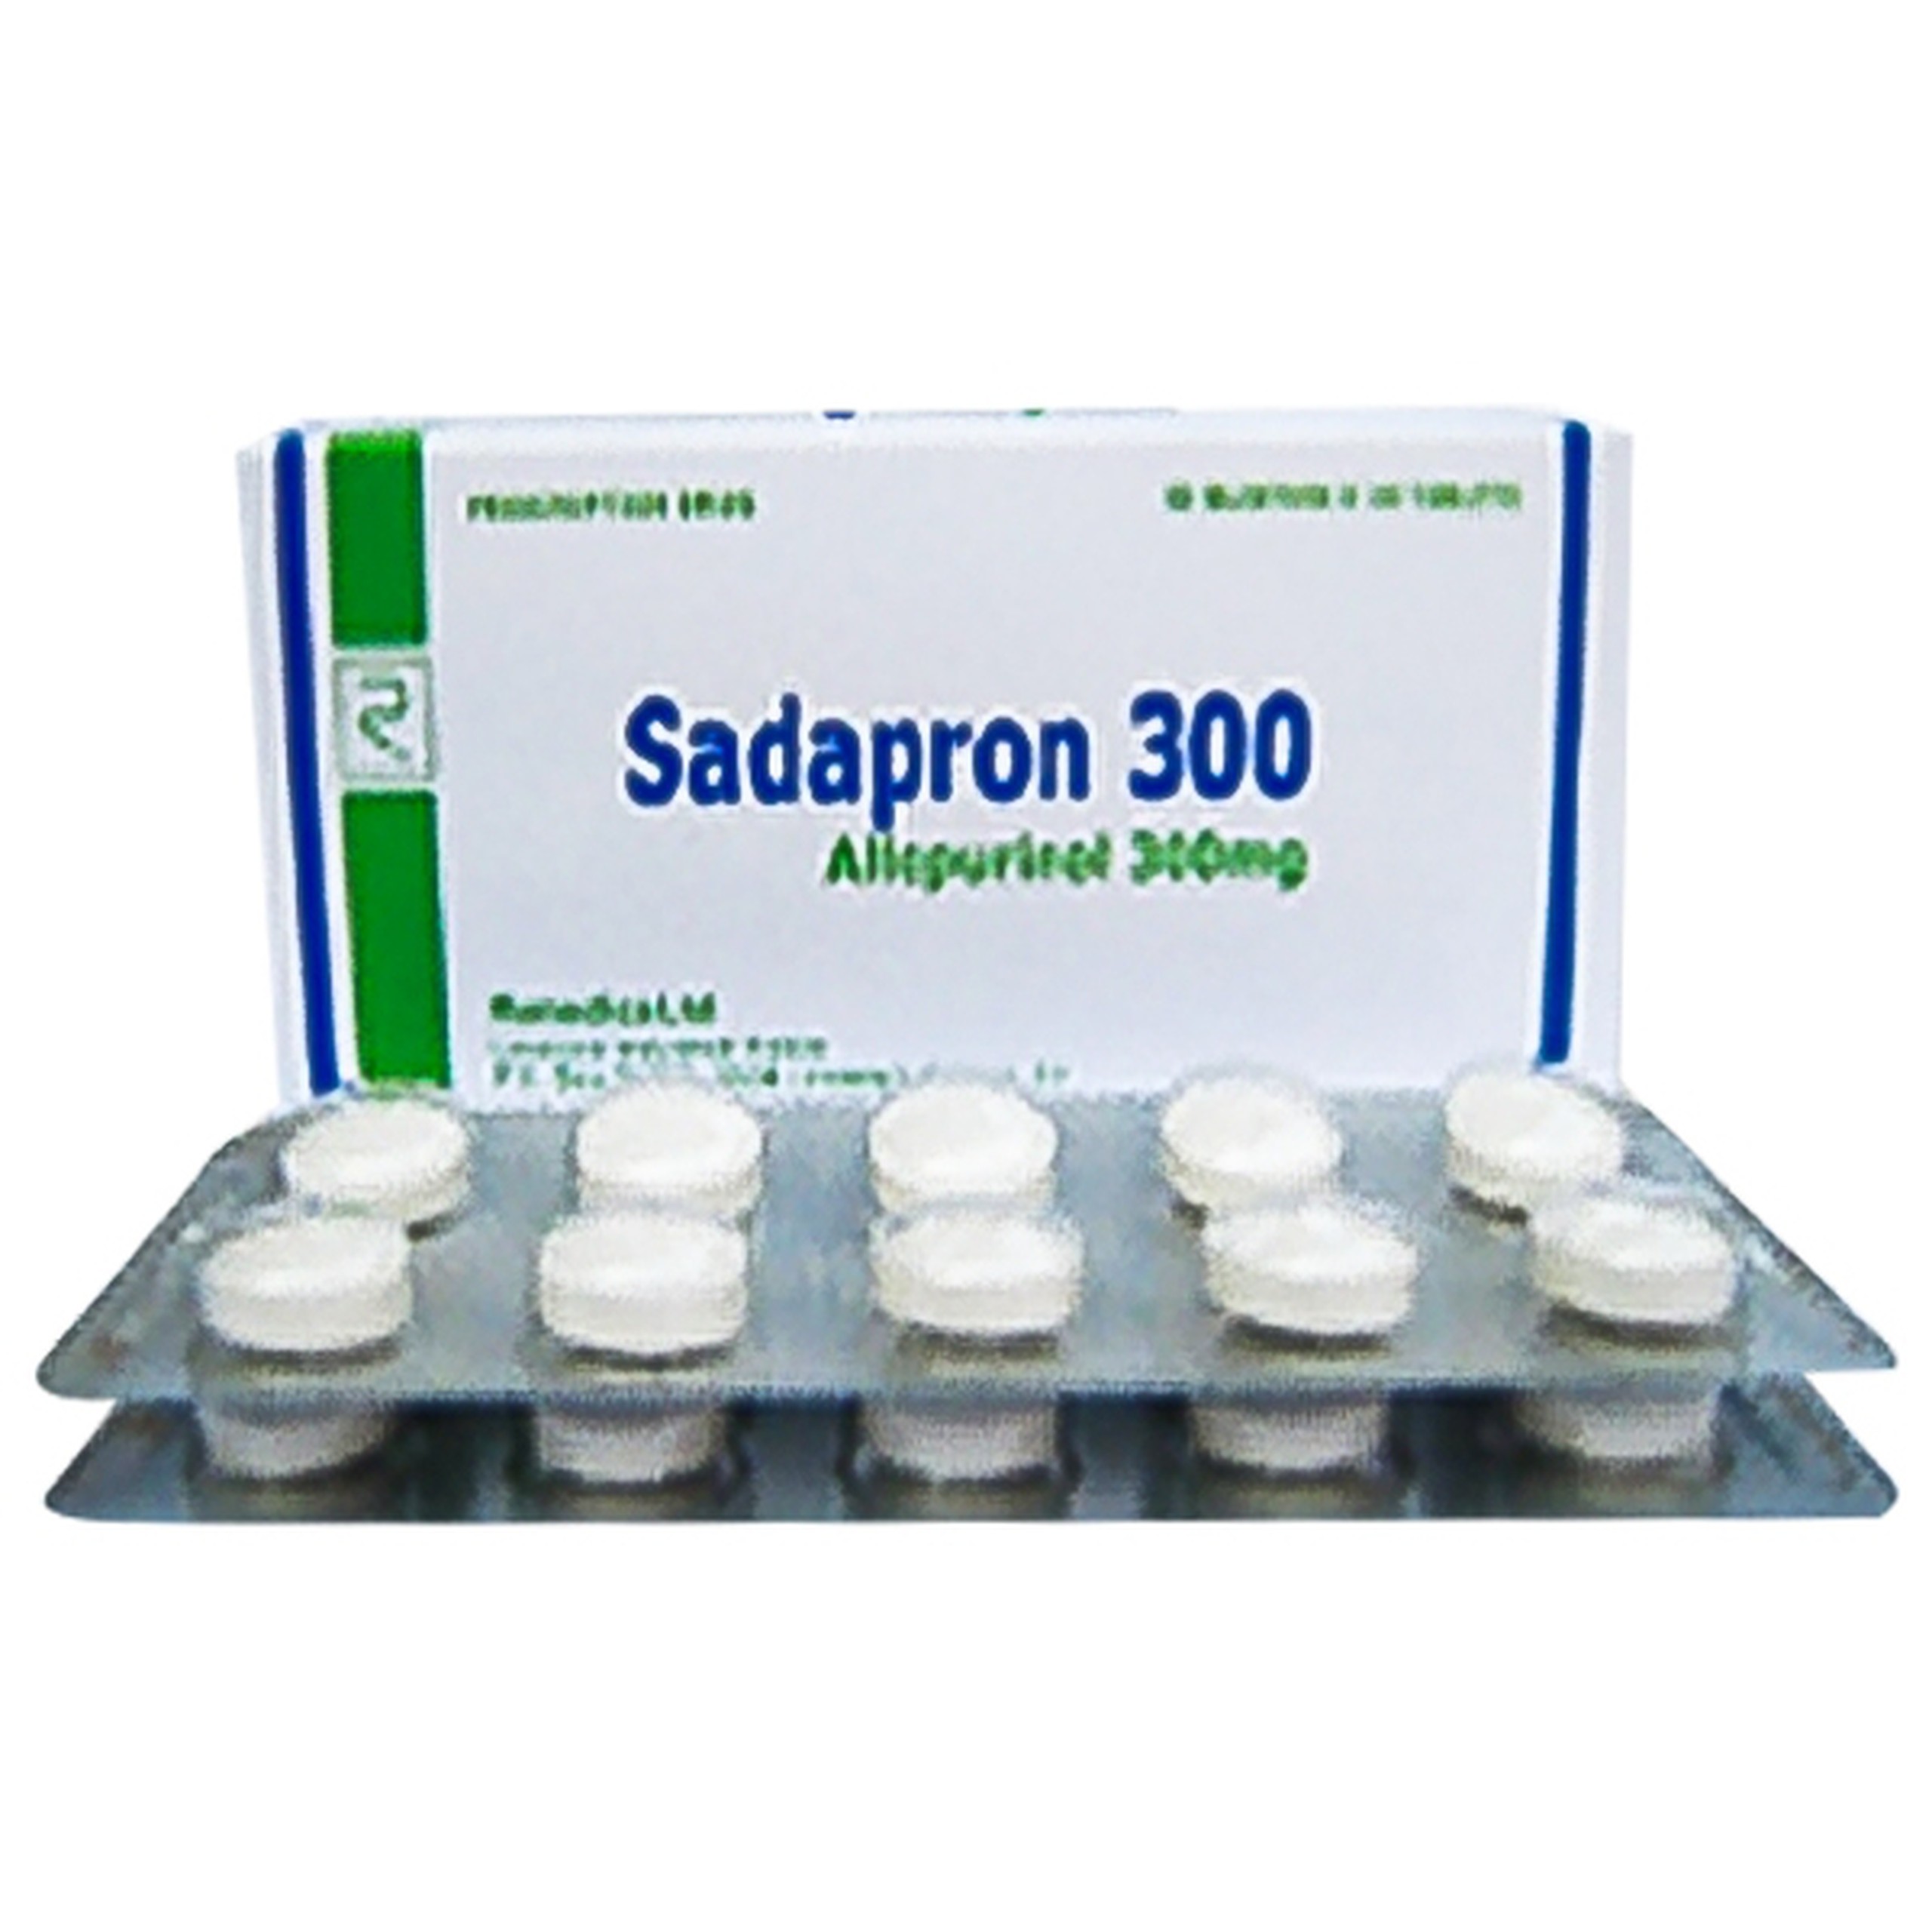 Thuốc Sadapron 300 Remedica điều trị chứng tăng acid uric máu (3 vỉ x 10 viên) 